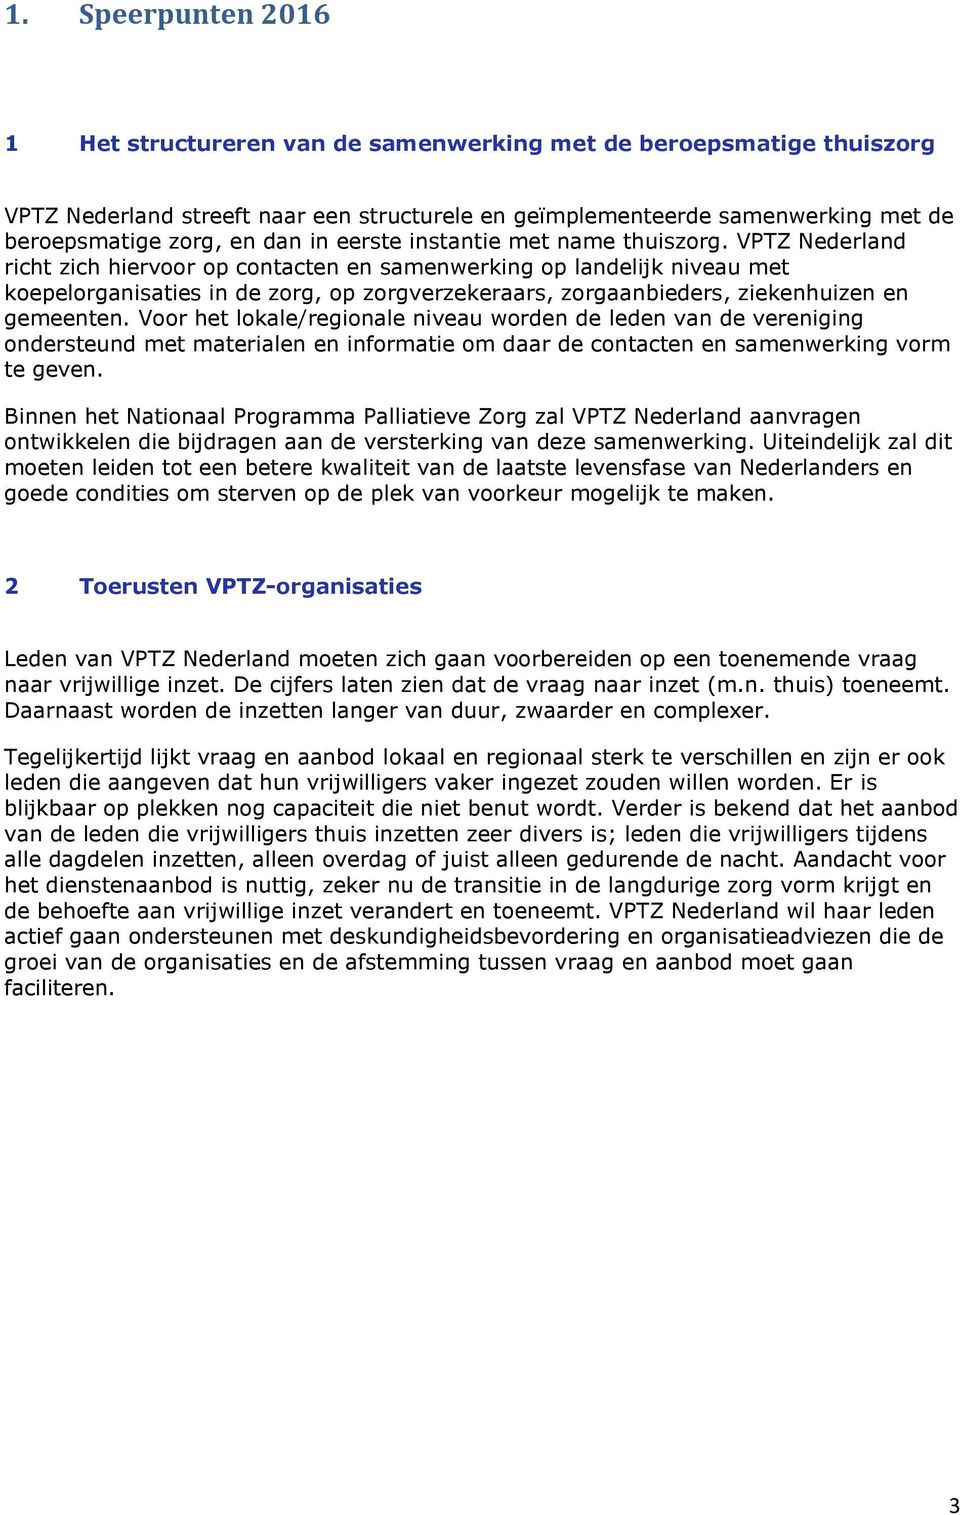 VPTZ Nederland richt zich hiervoor op contacten en samenwerking op landelijk niveau met koepelorganisaties in de zorg, op zorgverzekeraars, zorgaanbieders, ziekenhuizen en gemeenten.